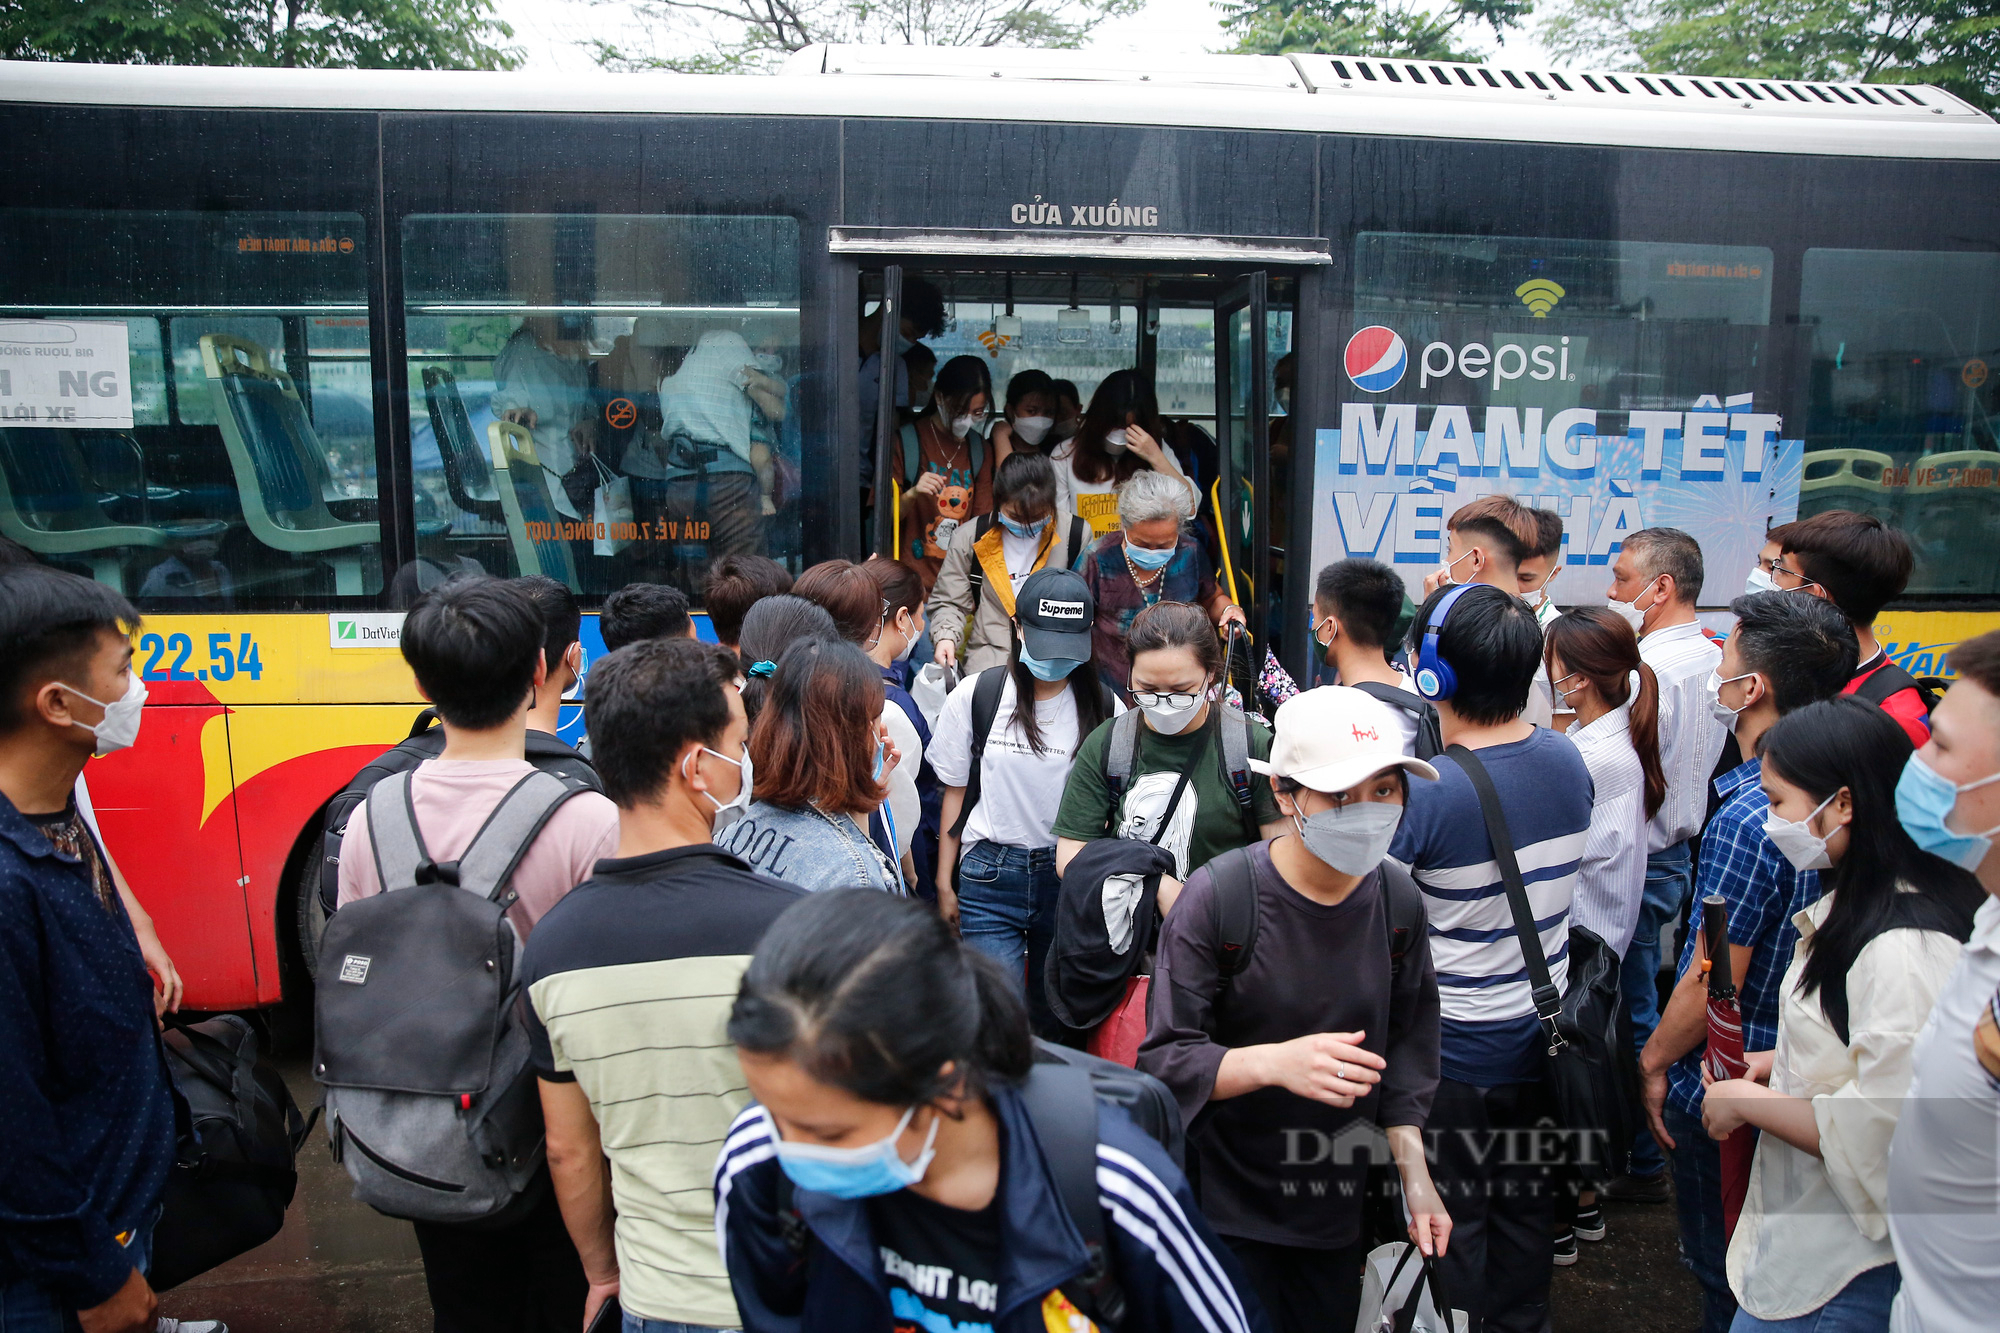 Bến xe tại Hà Nội đông nghẹt, người dân chen nhau lên xe khách về quê nghỉ lễ 30/4 - Ảnh 3.